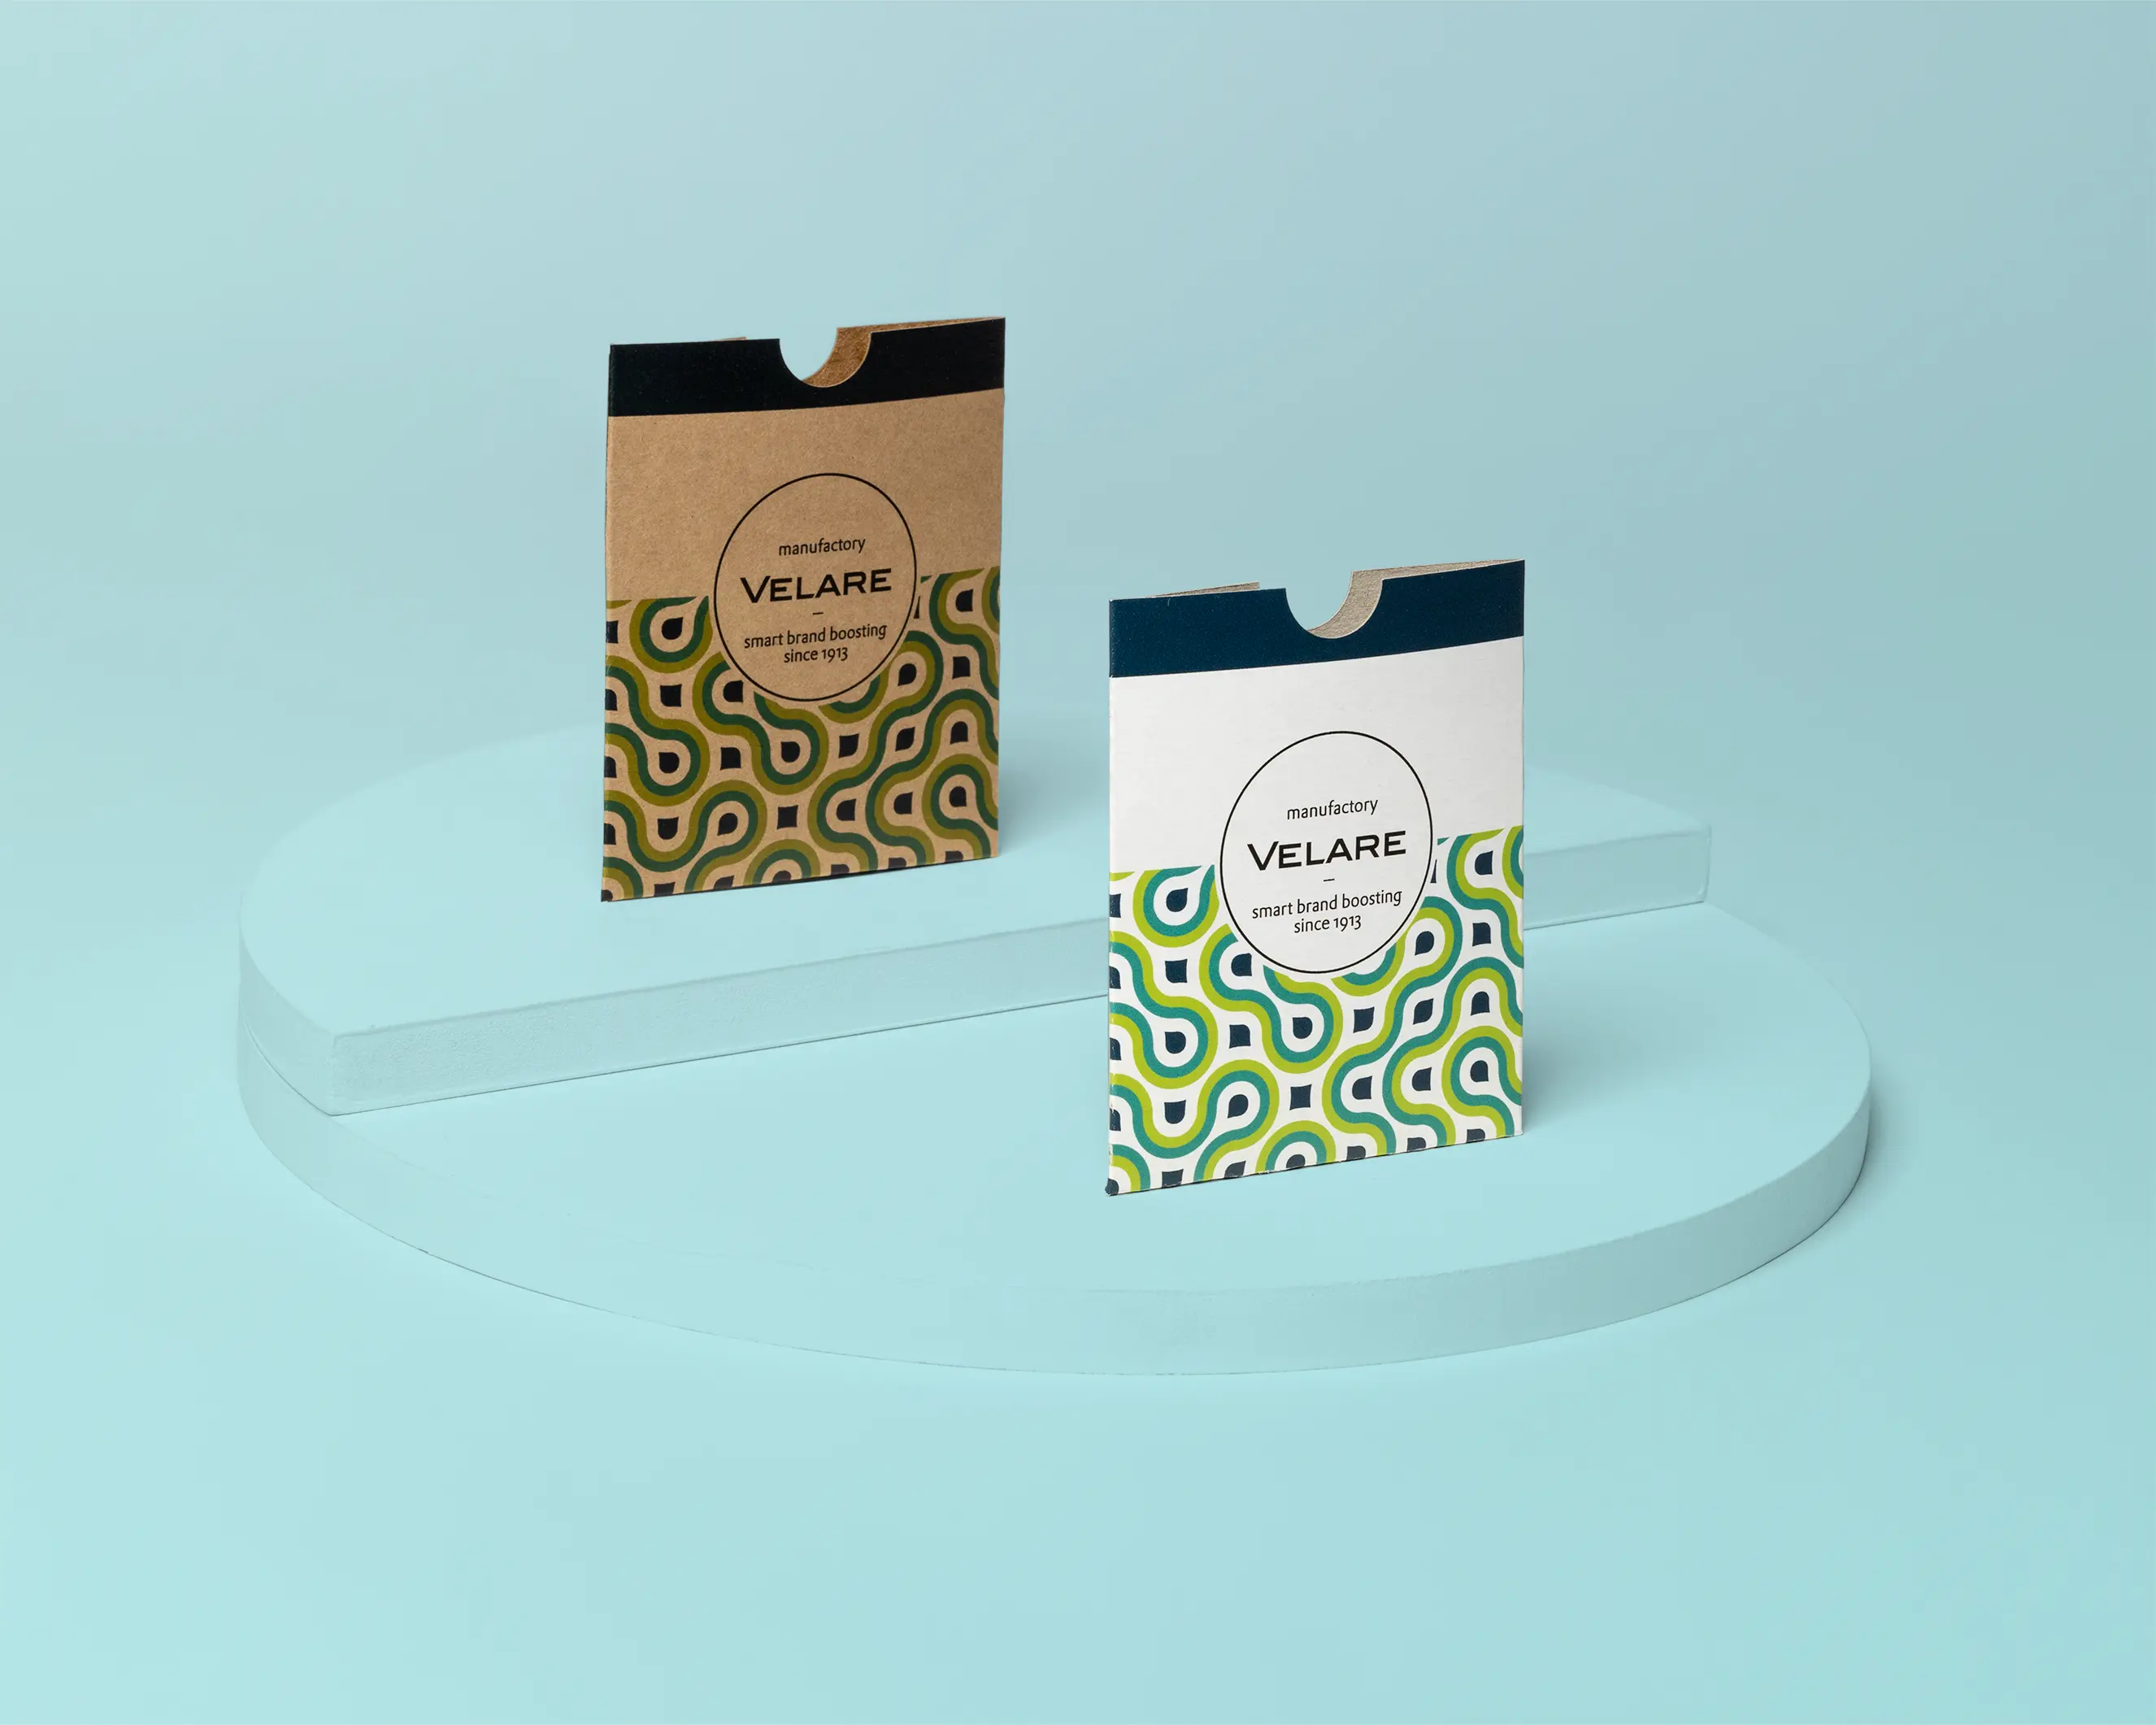 Kartenhülle ohne Verschluss, zwei Verpackungen stehend auf dem Podest, grüner Hintergrund